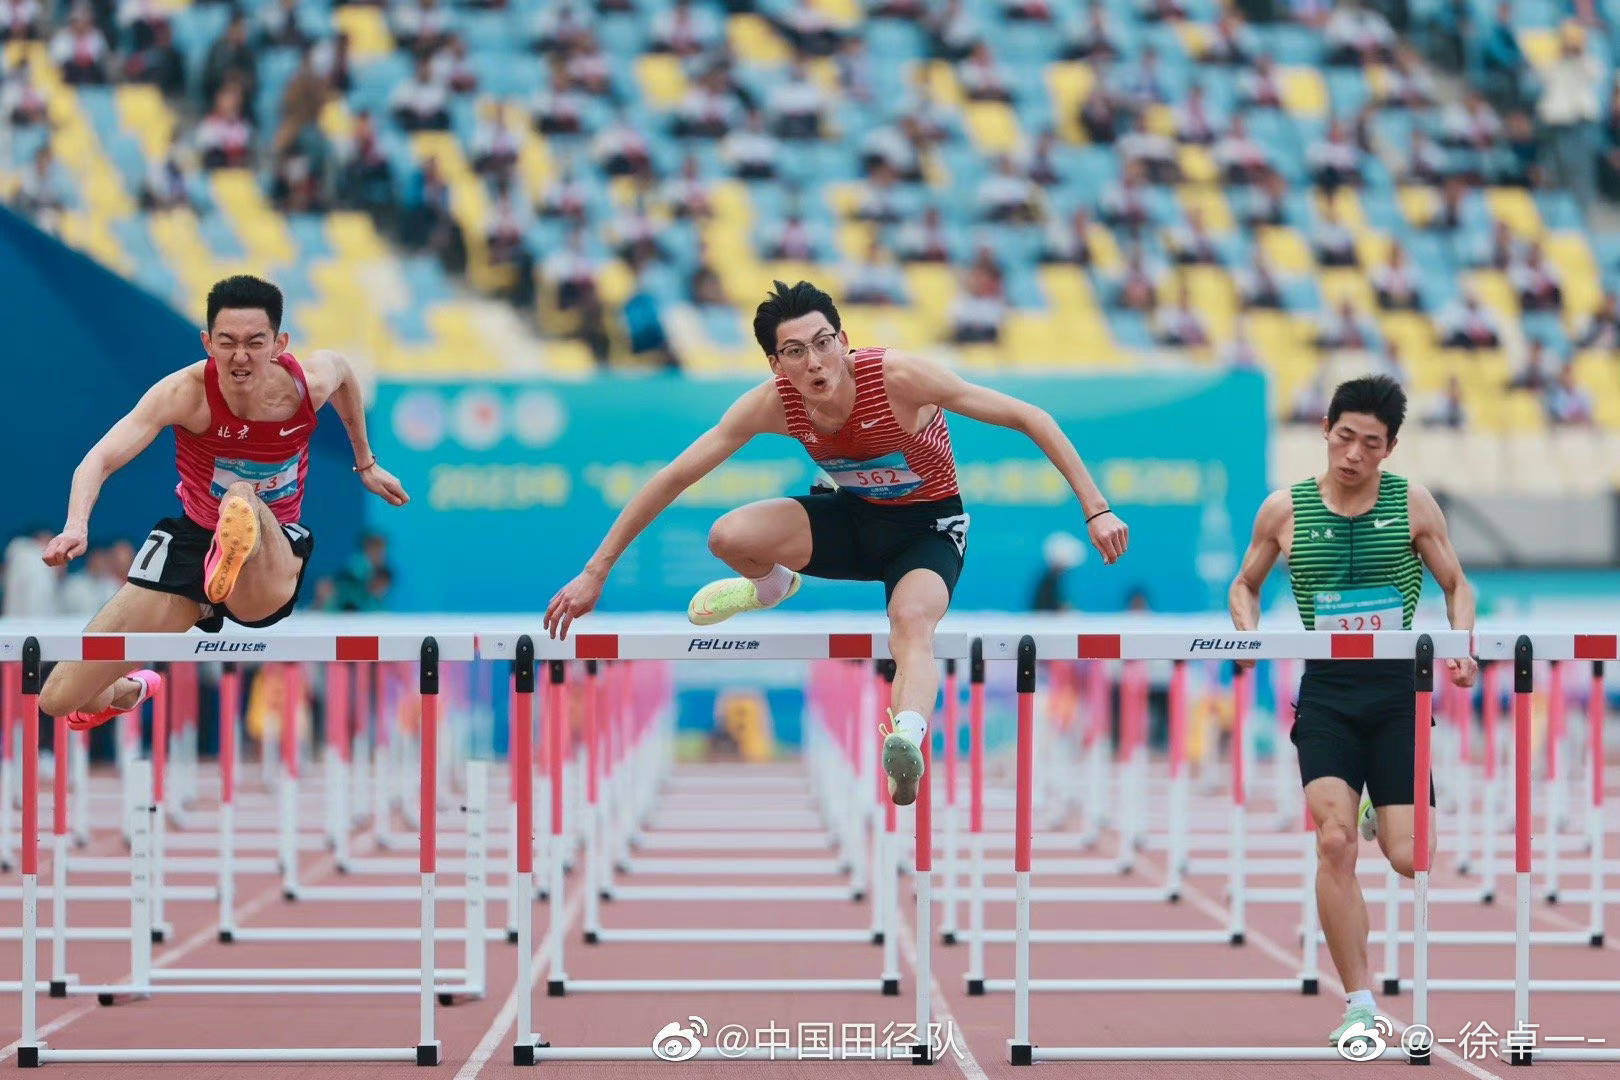 接班刘翔!中国第一位达标奥运的00后男子跨栏选手诞生,创造历史